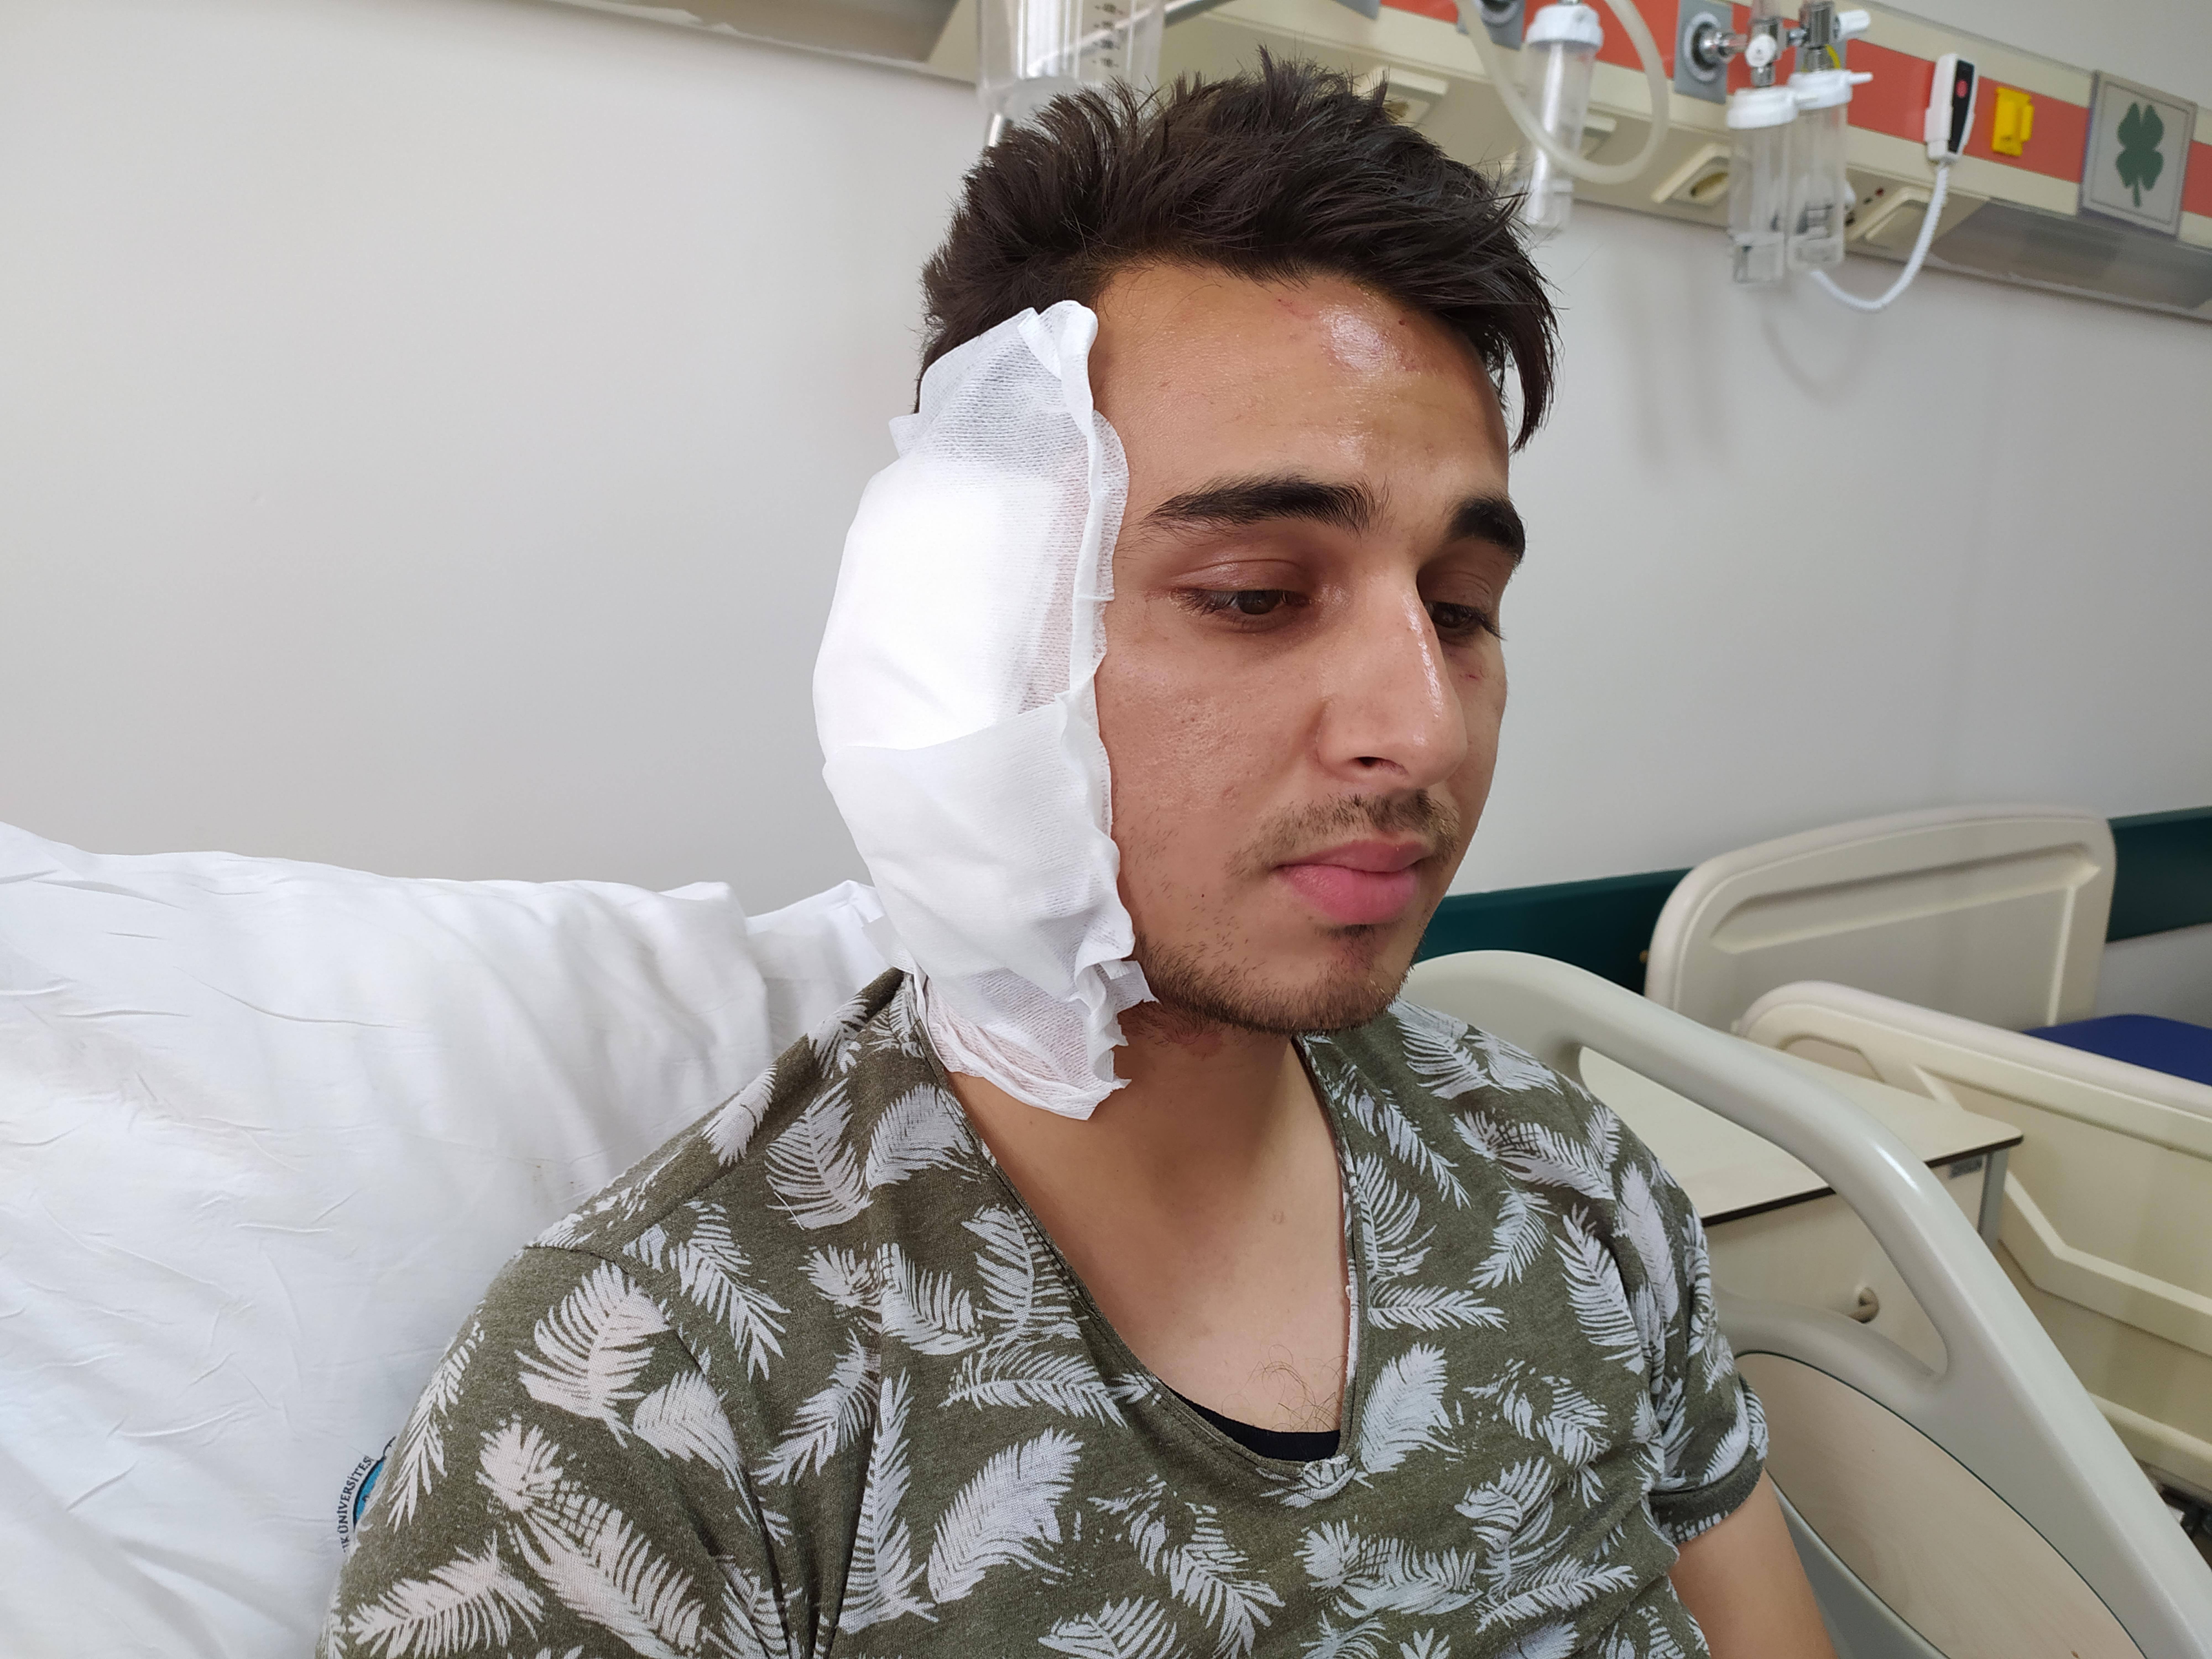 Postacının kavga sırasında kulağını ısırarak koparan saldırgan tutuklandı